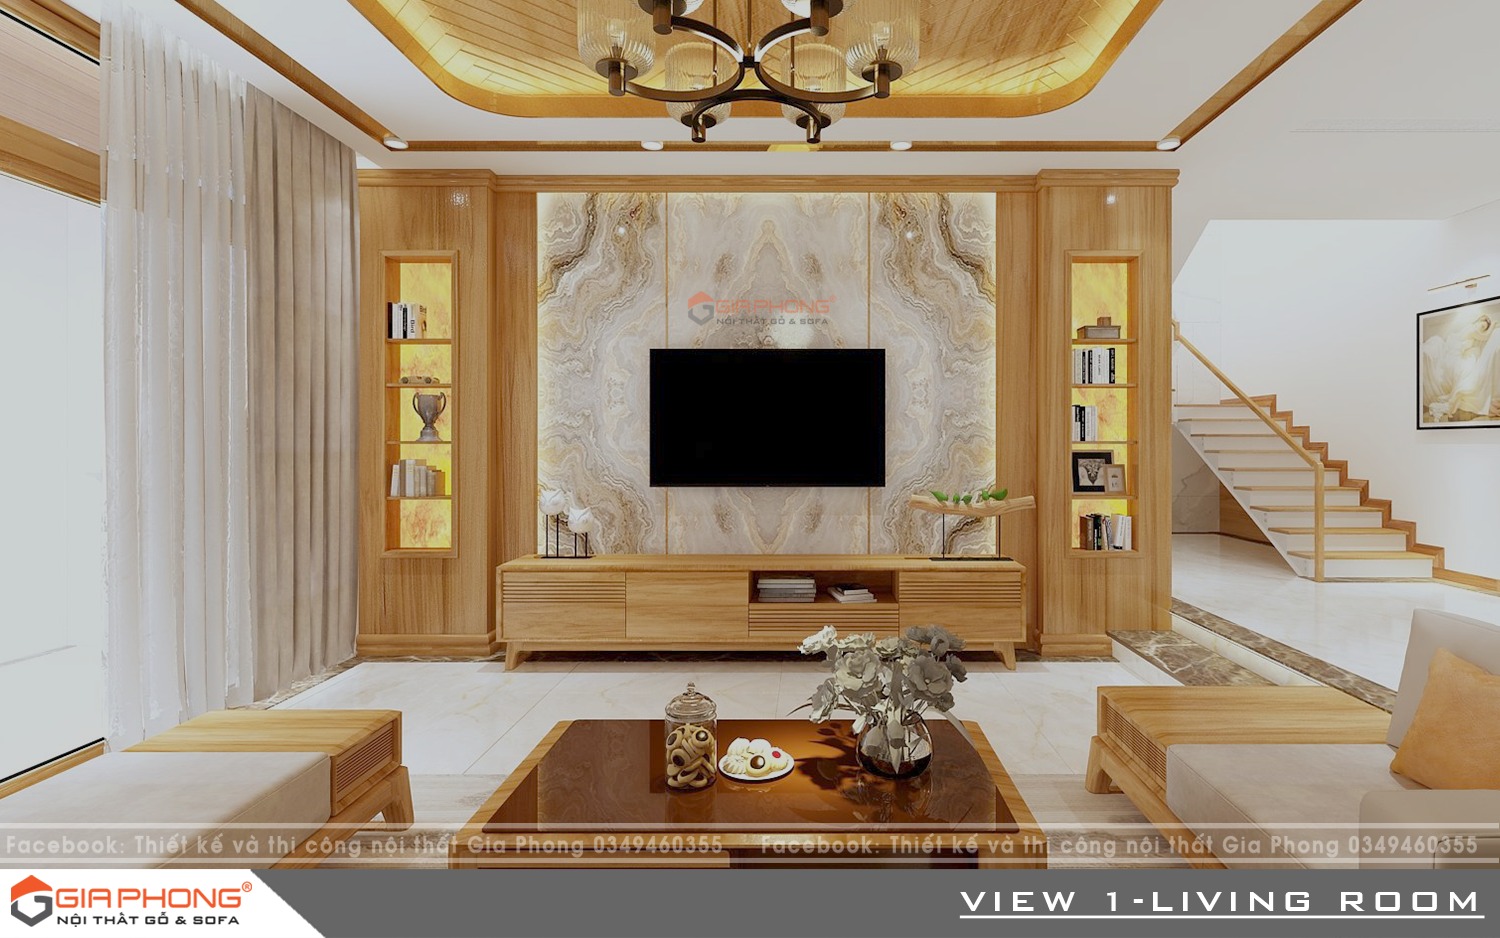 Thiết kế nội thất gỗ sồi giúp tối ưu hóa không gian nhà bạn, mang đến cảm giác thoải mái và thư giãn cho các thành viên trong gia đình. Cùng xem bộ sưu tập những mẫu thiết kế nội thất gỗ sồi hợp thời trang và tinh tế nhất để chọn lựa cho ngôi nhà của bạn.